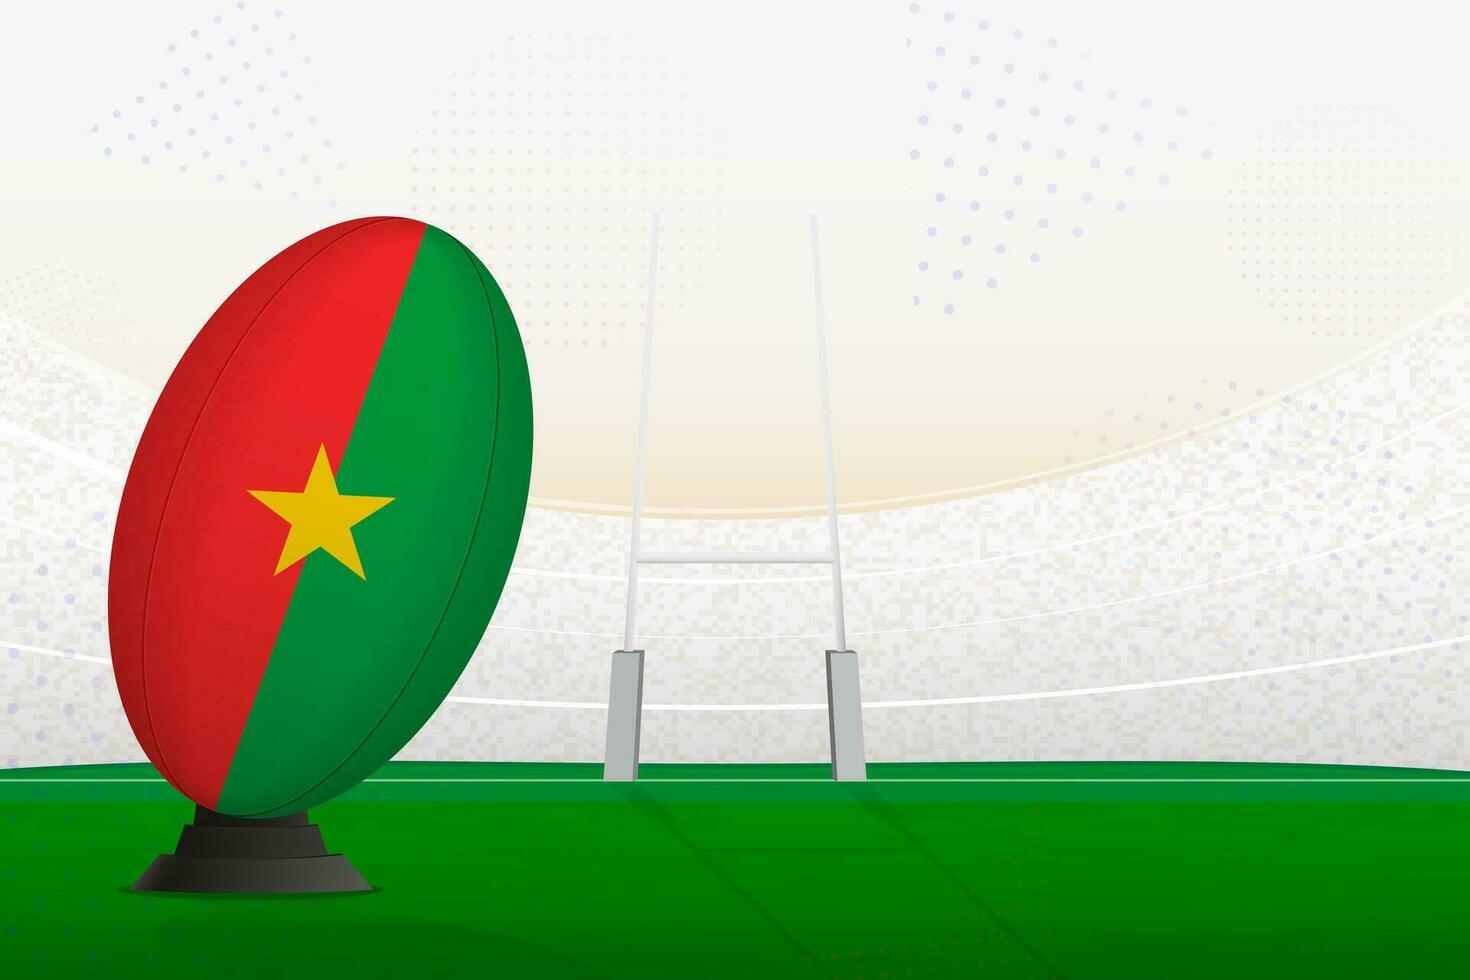 burkina faso nacional equipo rugby pelota en rugby estadio y objetivo publicaciones, preparando para un multa o gratis patada. vector